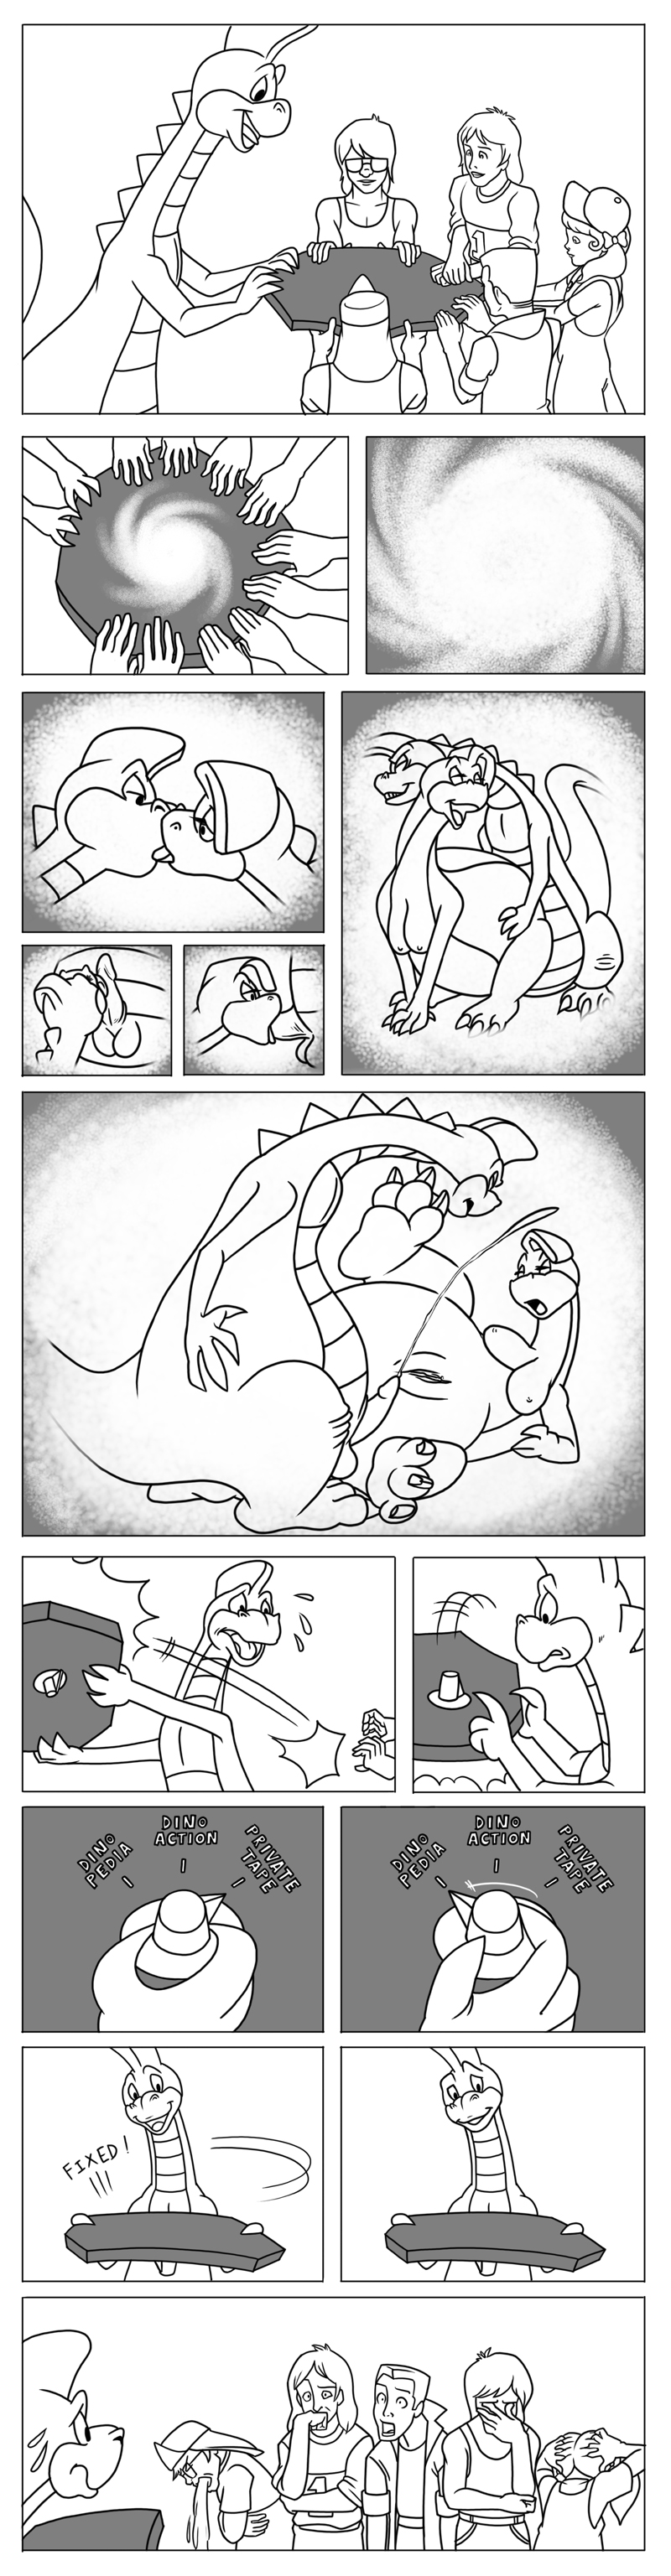 comic cum denver denver_the_last_dinosaur dinosaur fellatio licking nanogrrr oral oral_sex penis pussy scalie sex tongue